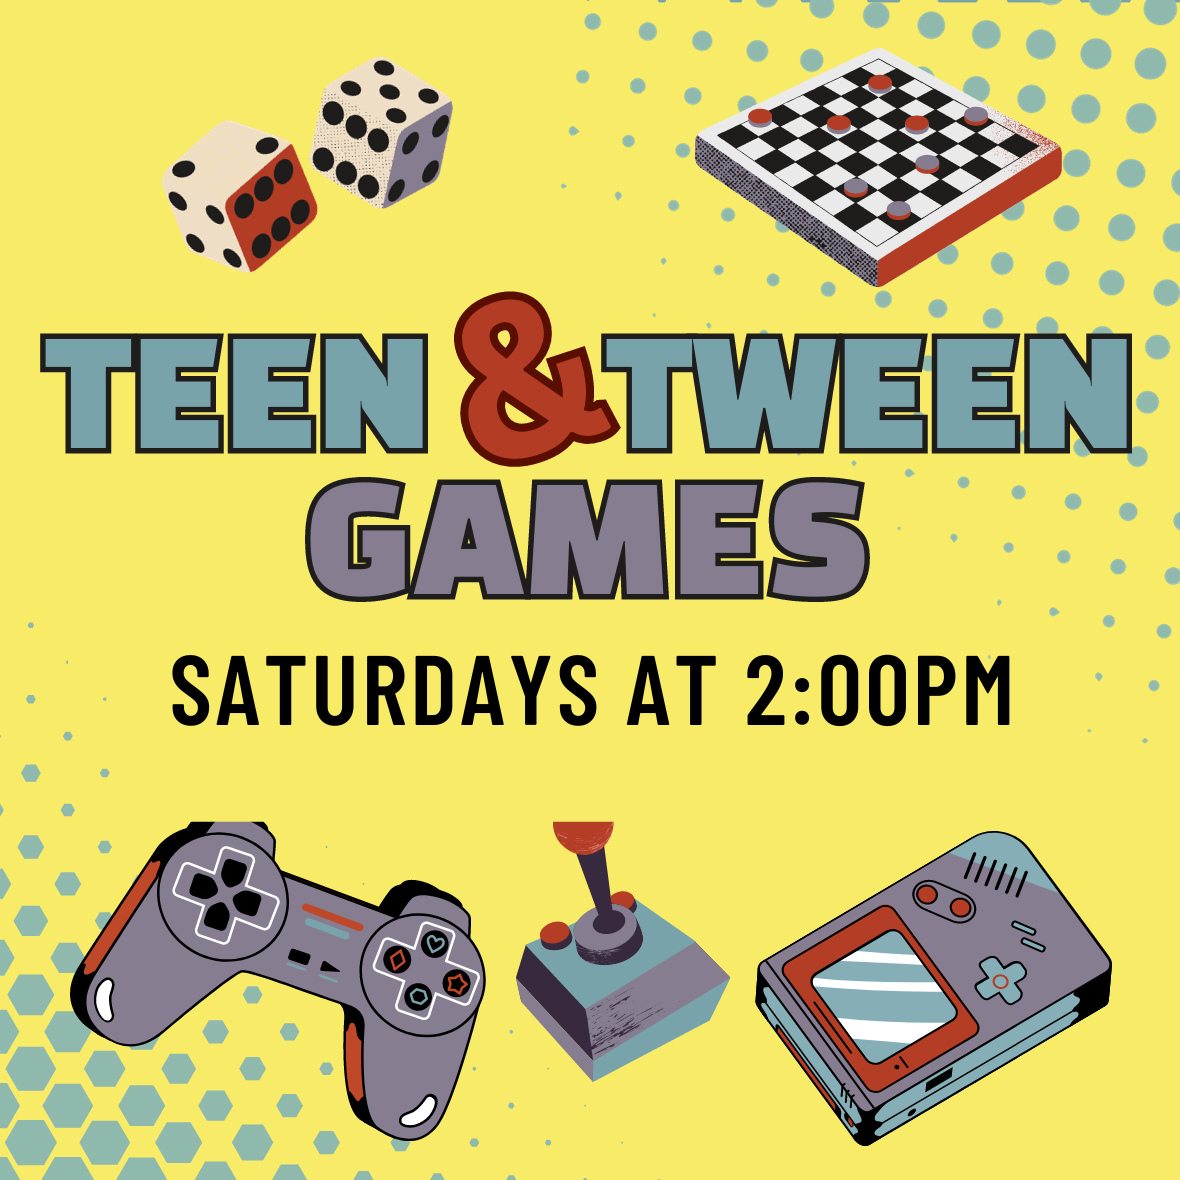 Teen and Tween Games